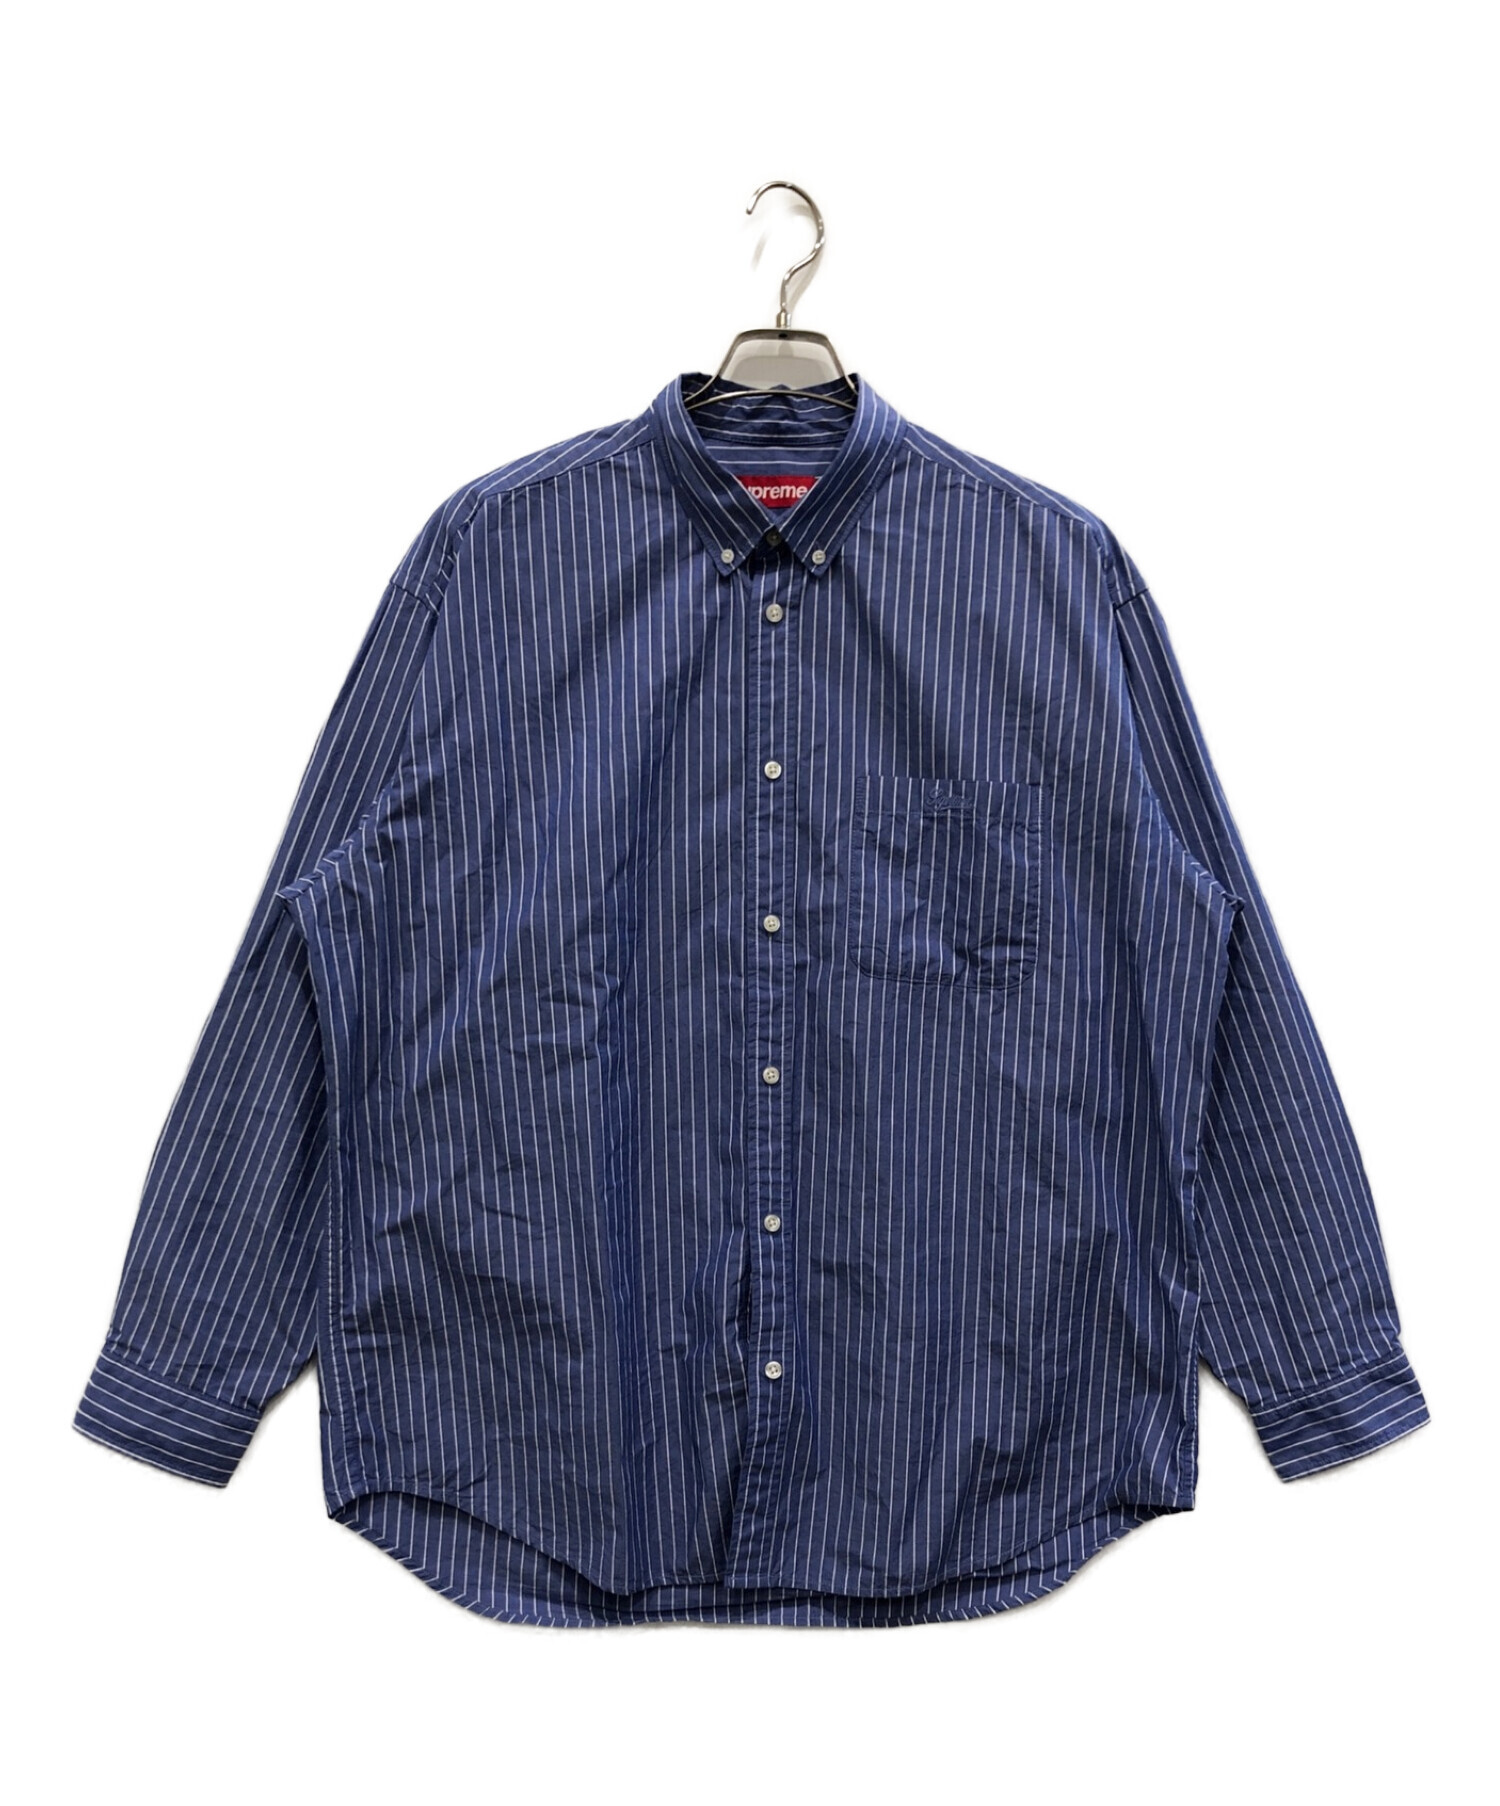 Supreme 23AW FW Loose Fit Stripe Shirt購入は国内オンラインになります